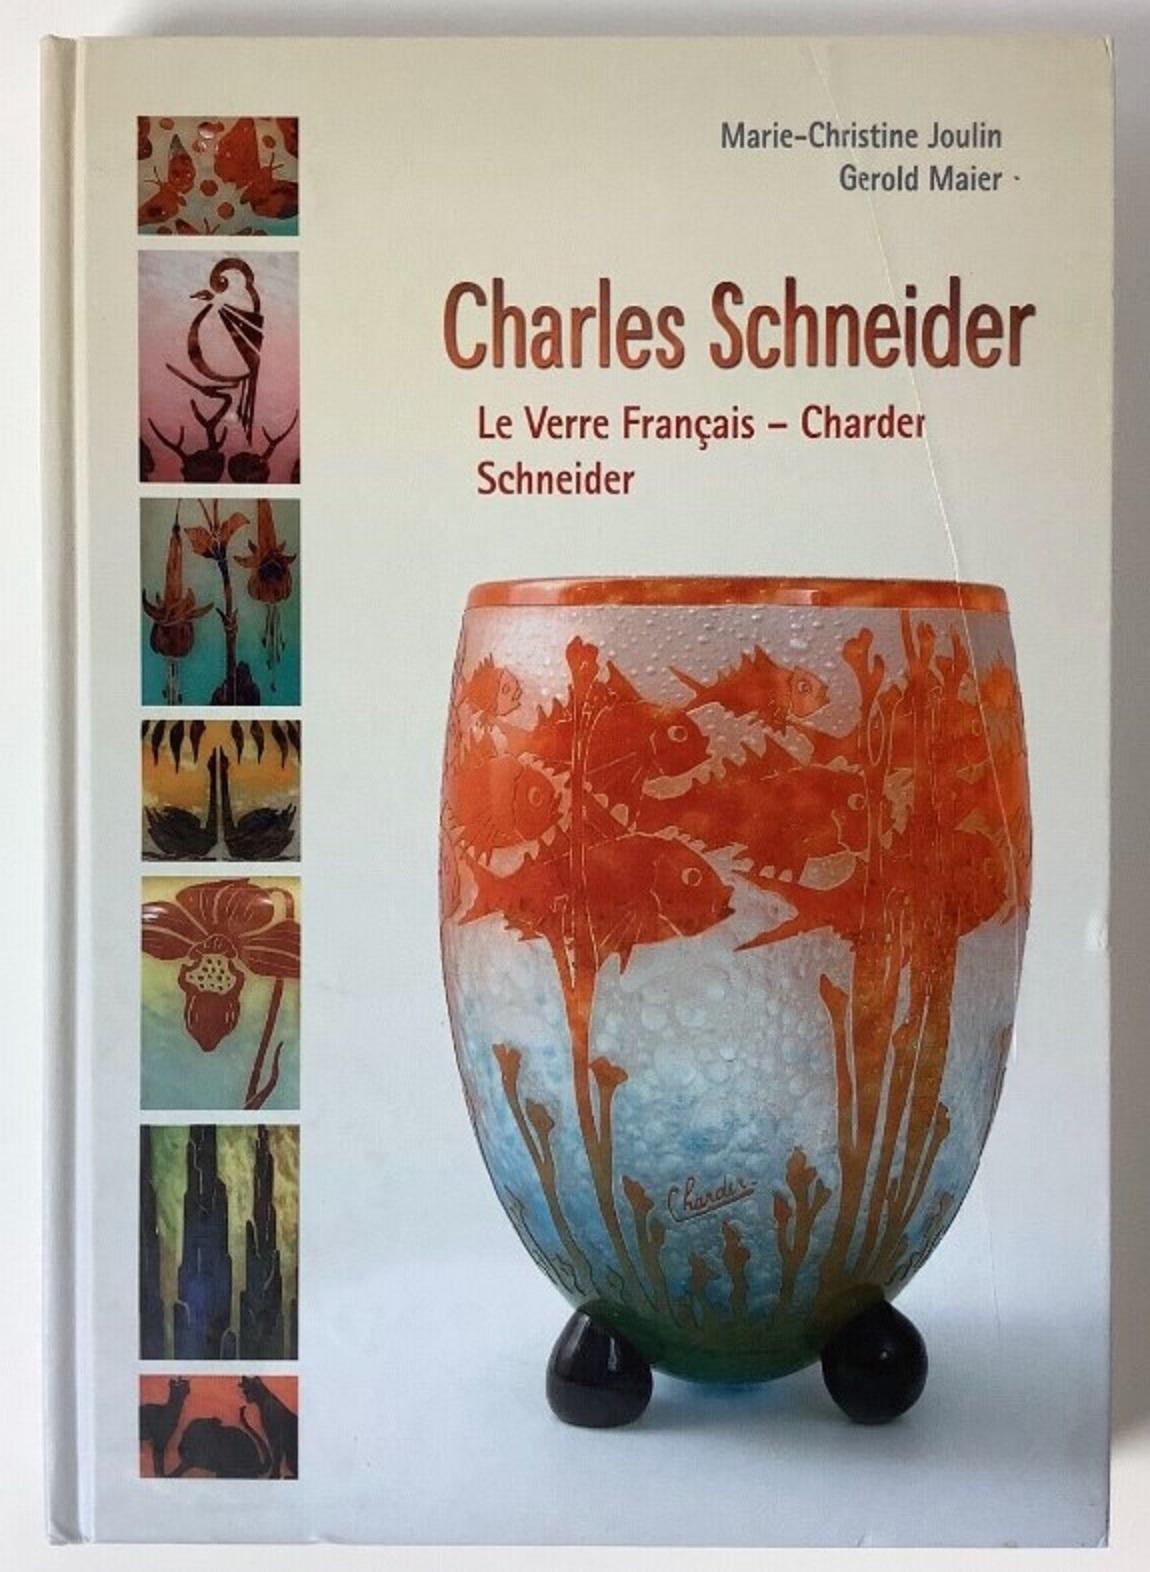 Vase Le Verre Francais 
Säure arbeitete
Das Kamee-Glas Le Verre war eine eigene, von Charles Schneider entworfene Kunstglaslinie. Sie wurde zur gleichen Zeit wie die von Schneider entworfenen Brillen (1918-1933) hergestellt. Ab 1919 wurden die